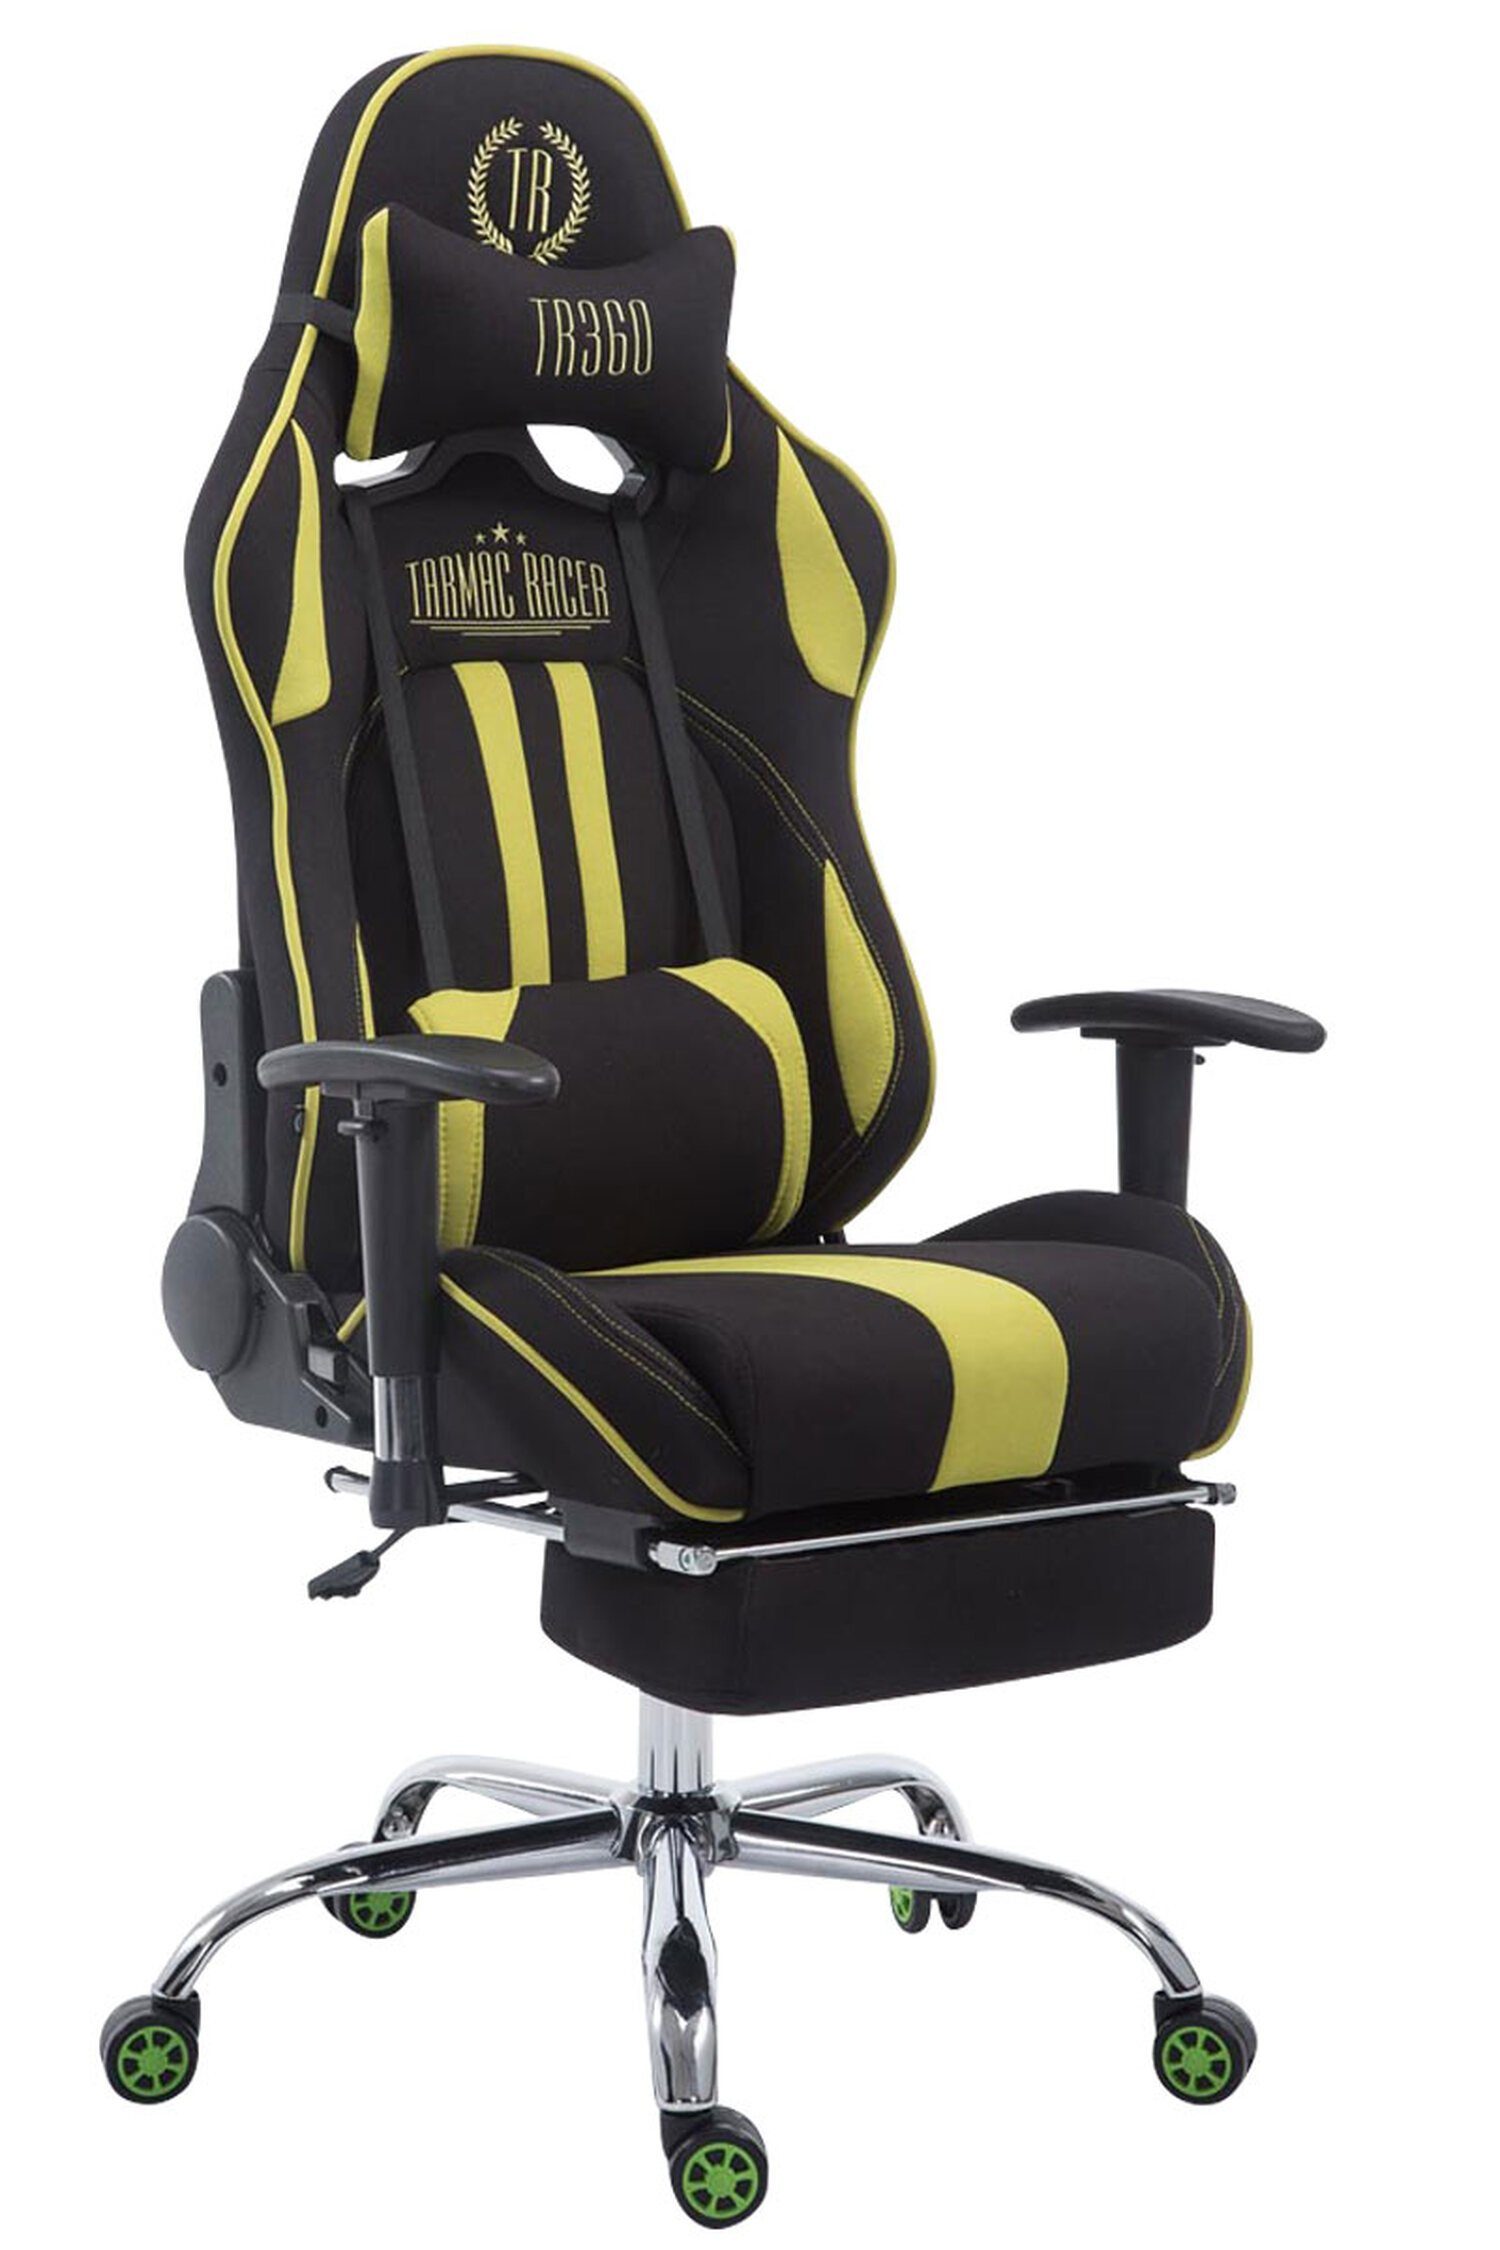 TPFLiving Gaming-Stuhl Limitless mit bequemer Rückenlehne - höhenverstellbar und 360° drehbar (Schreibtischstuhl, Drehstuhl, Gamingstuhl, Racingstuhl, Chefsessel), Gestell: Metall chrom - Sitzfläche: Stoff schwarz/grün